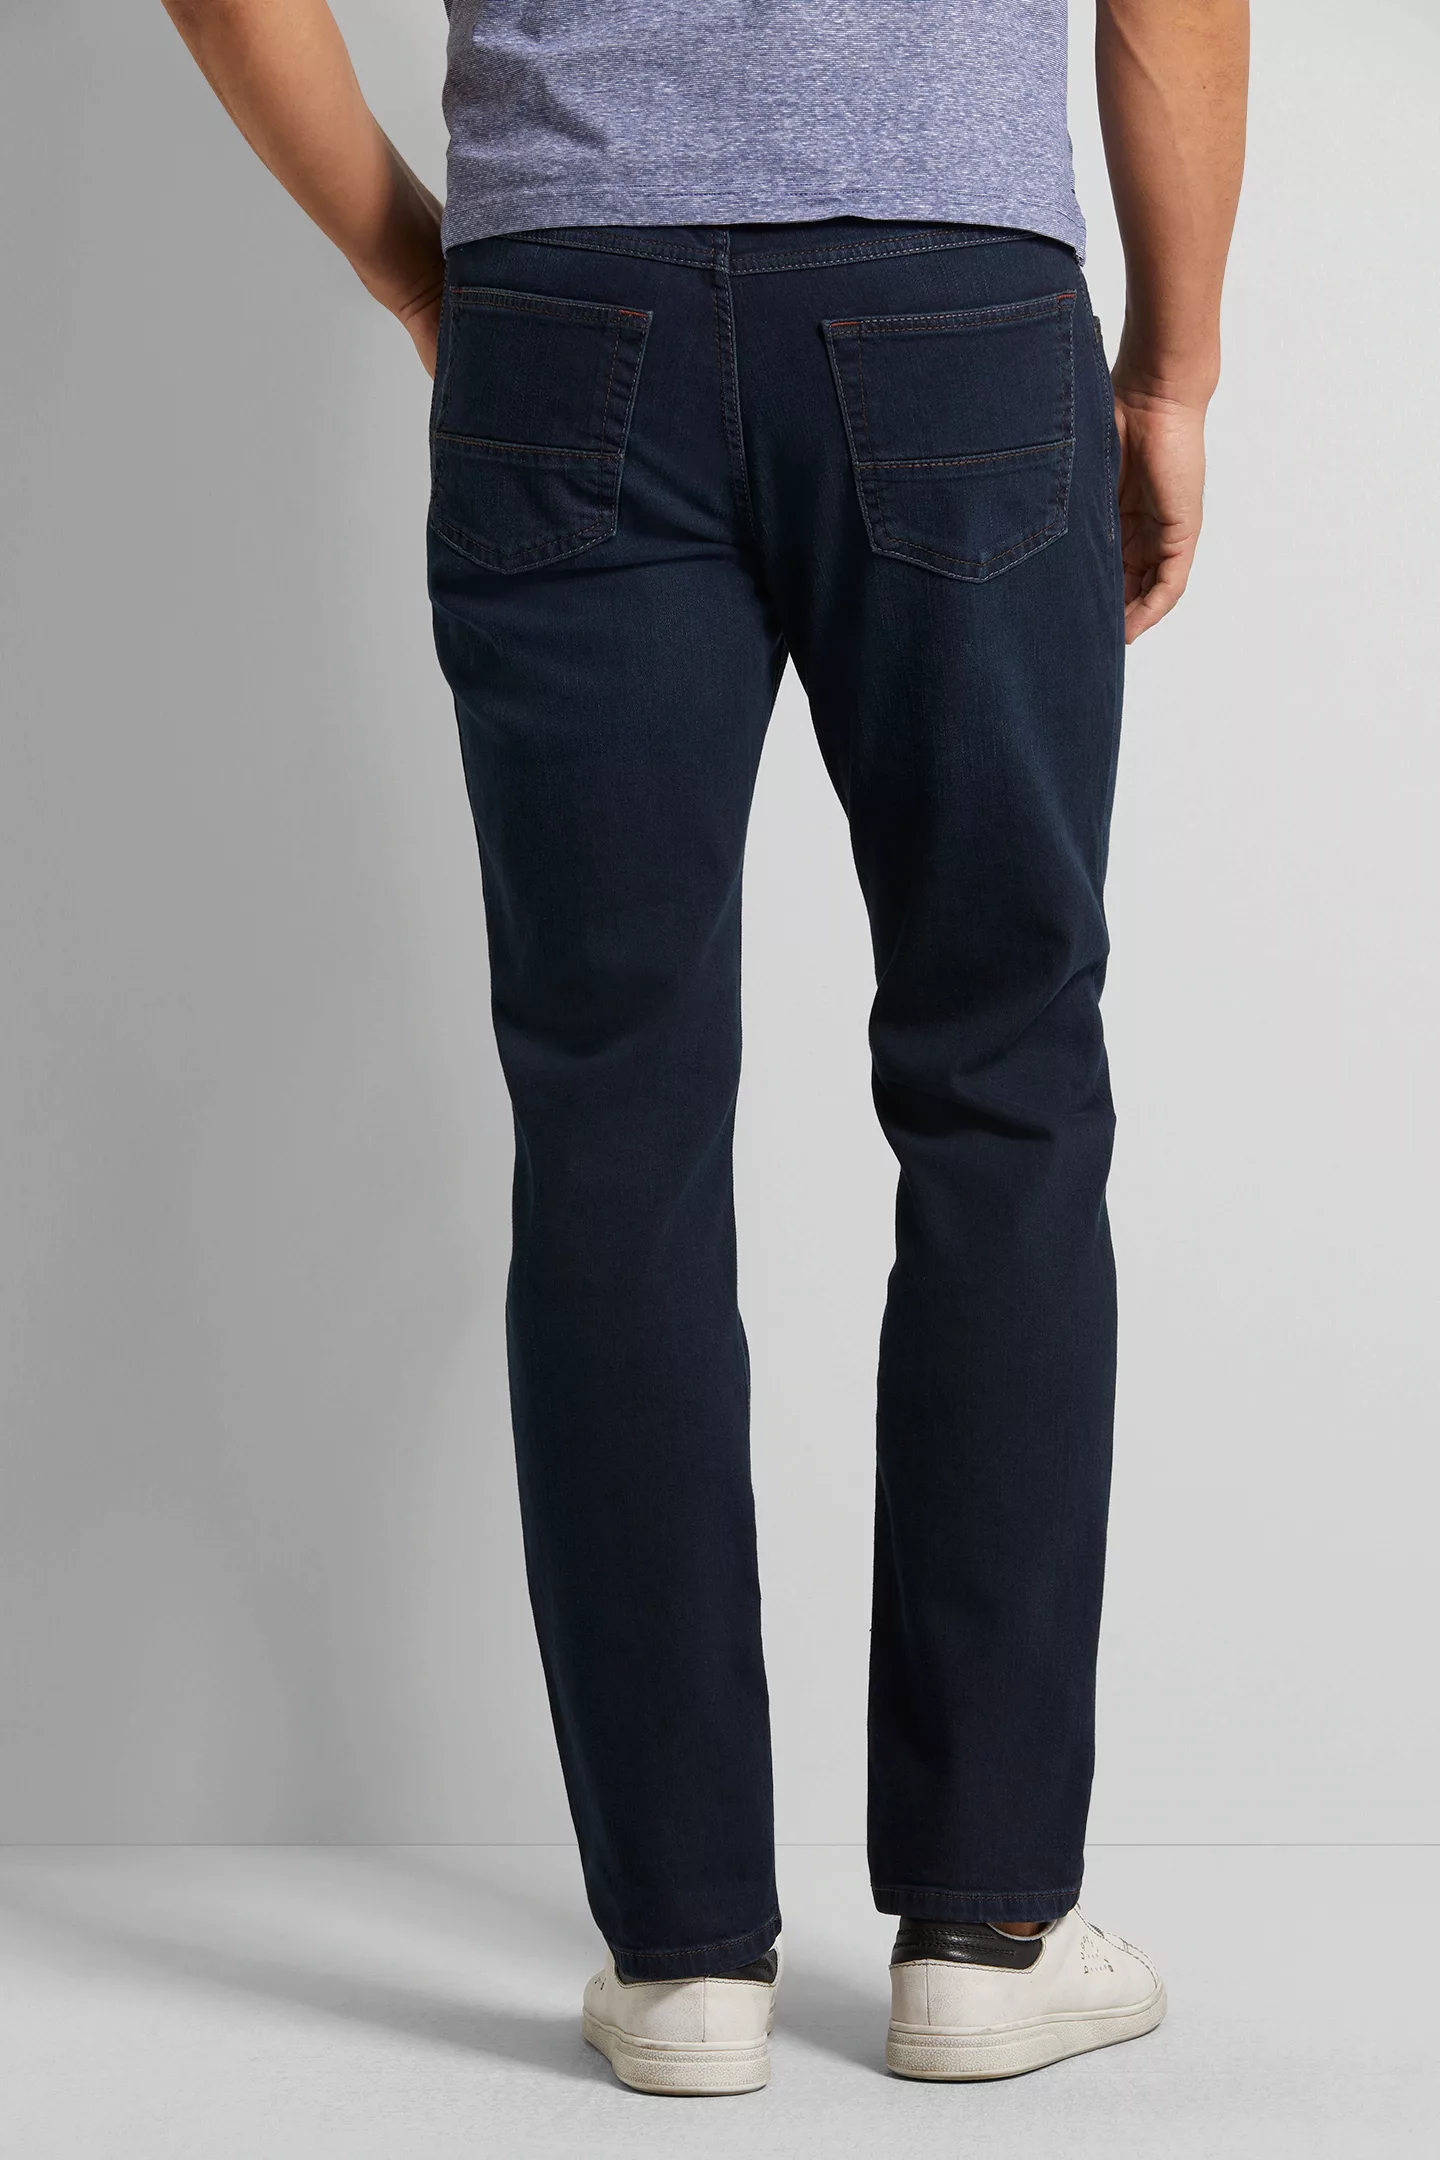 bugatti Jeans 3280D/16640/293 günstig online kaufen